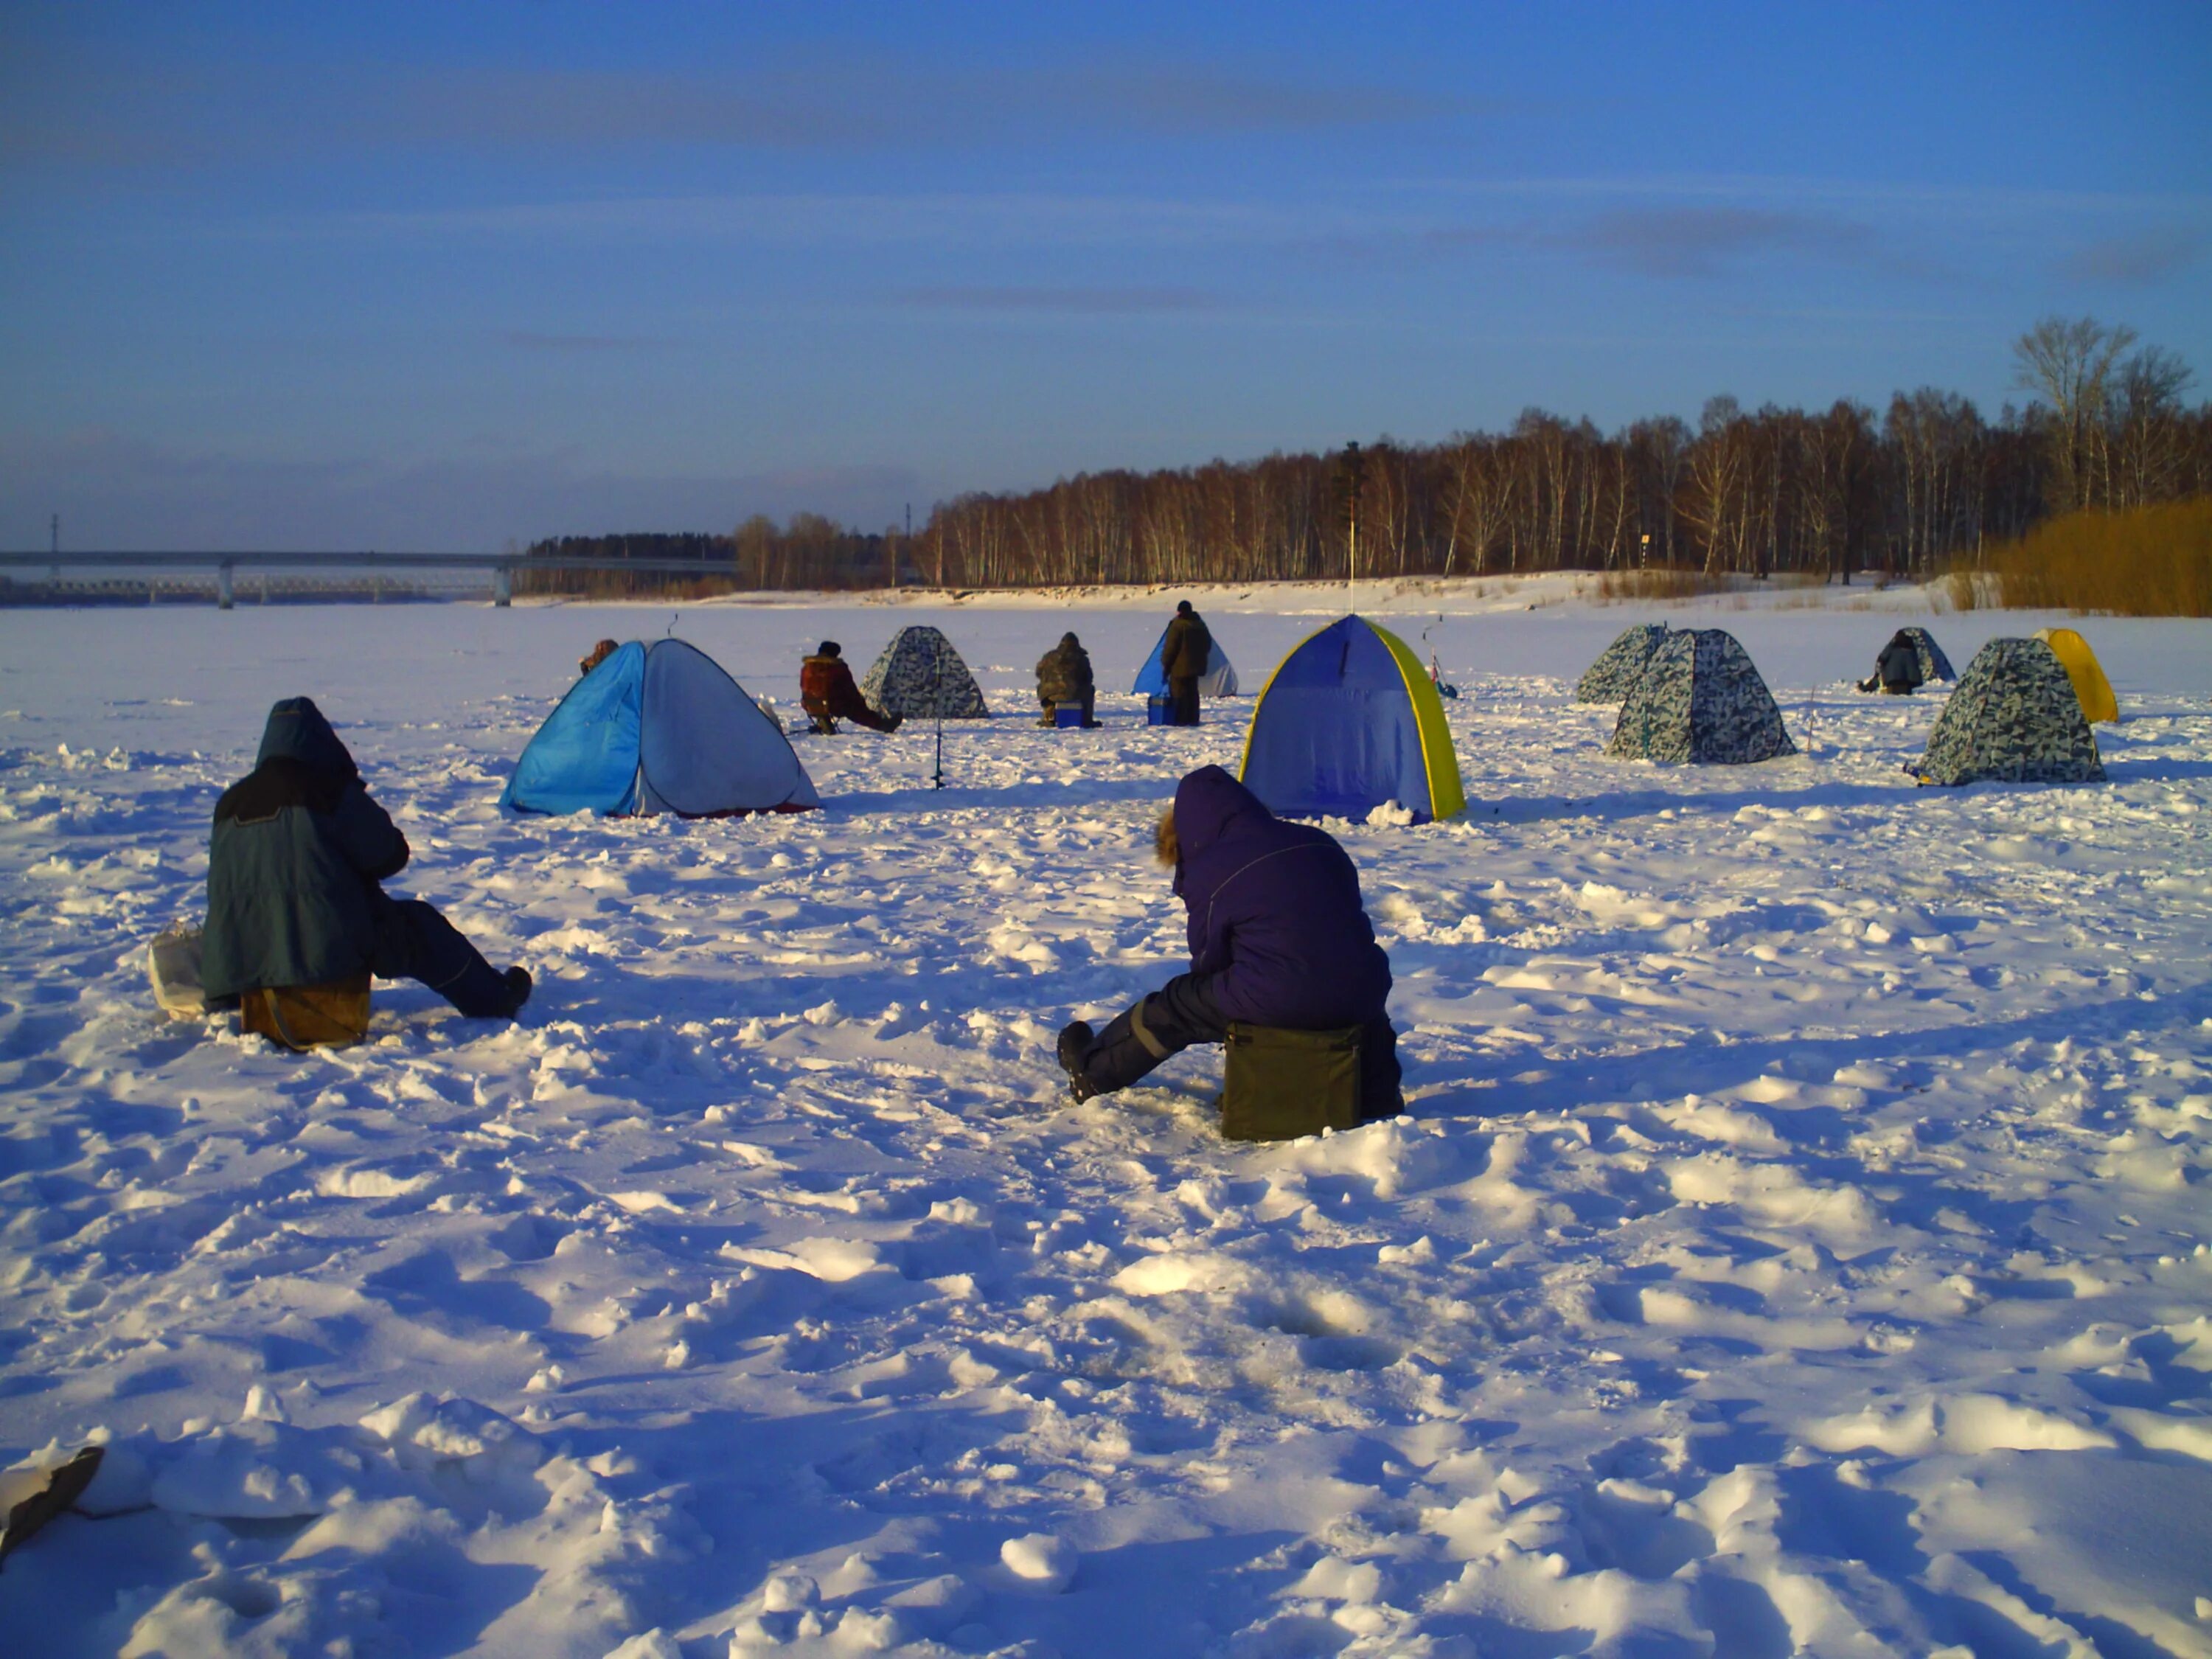 Зимняя рыбалка в палатке. Палатка на льду. Рыбацкая палатка на льду. Рыбалка в палатке зимой. Зимняя рыбалка на льду в палатке.